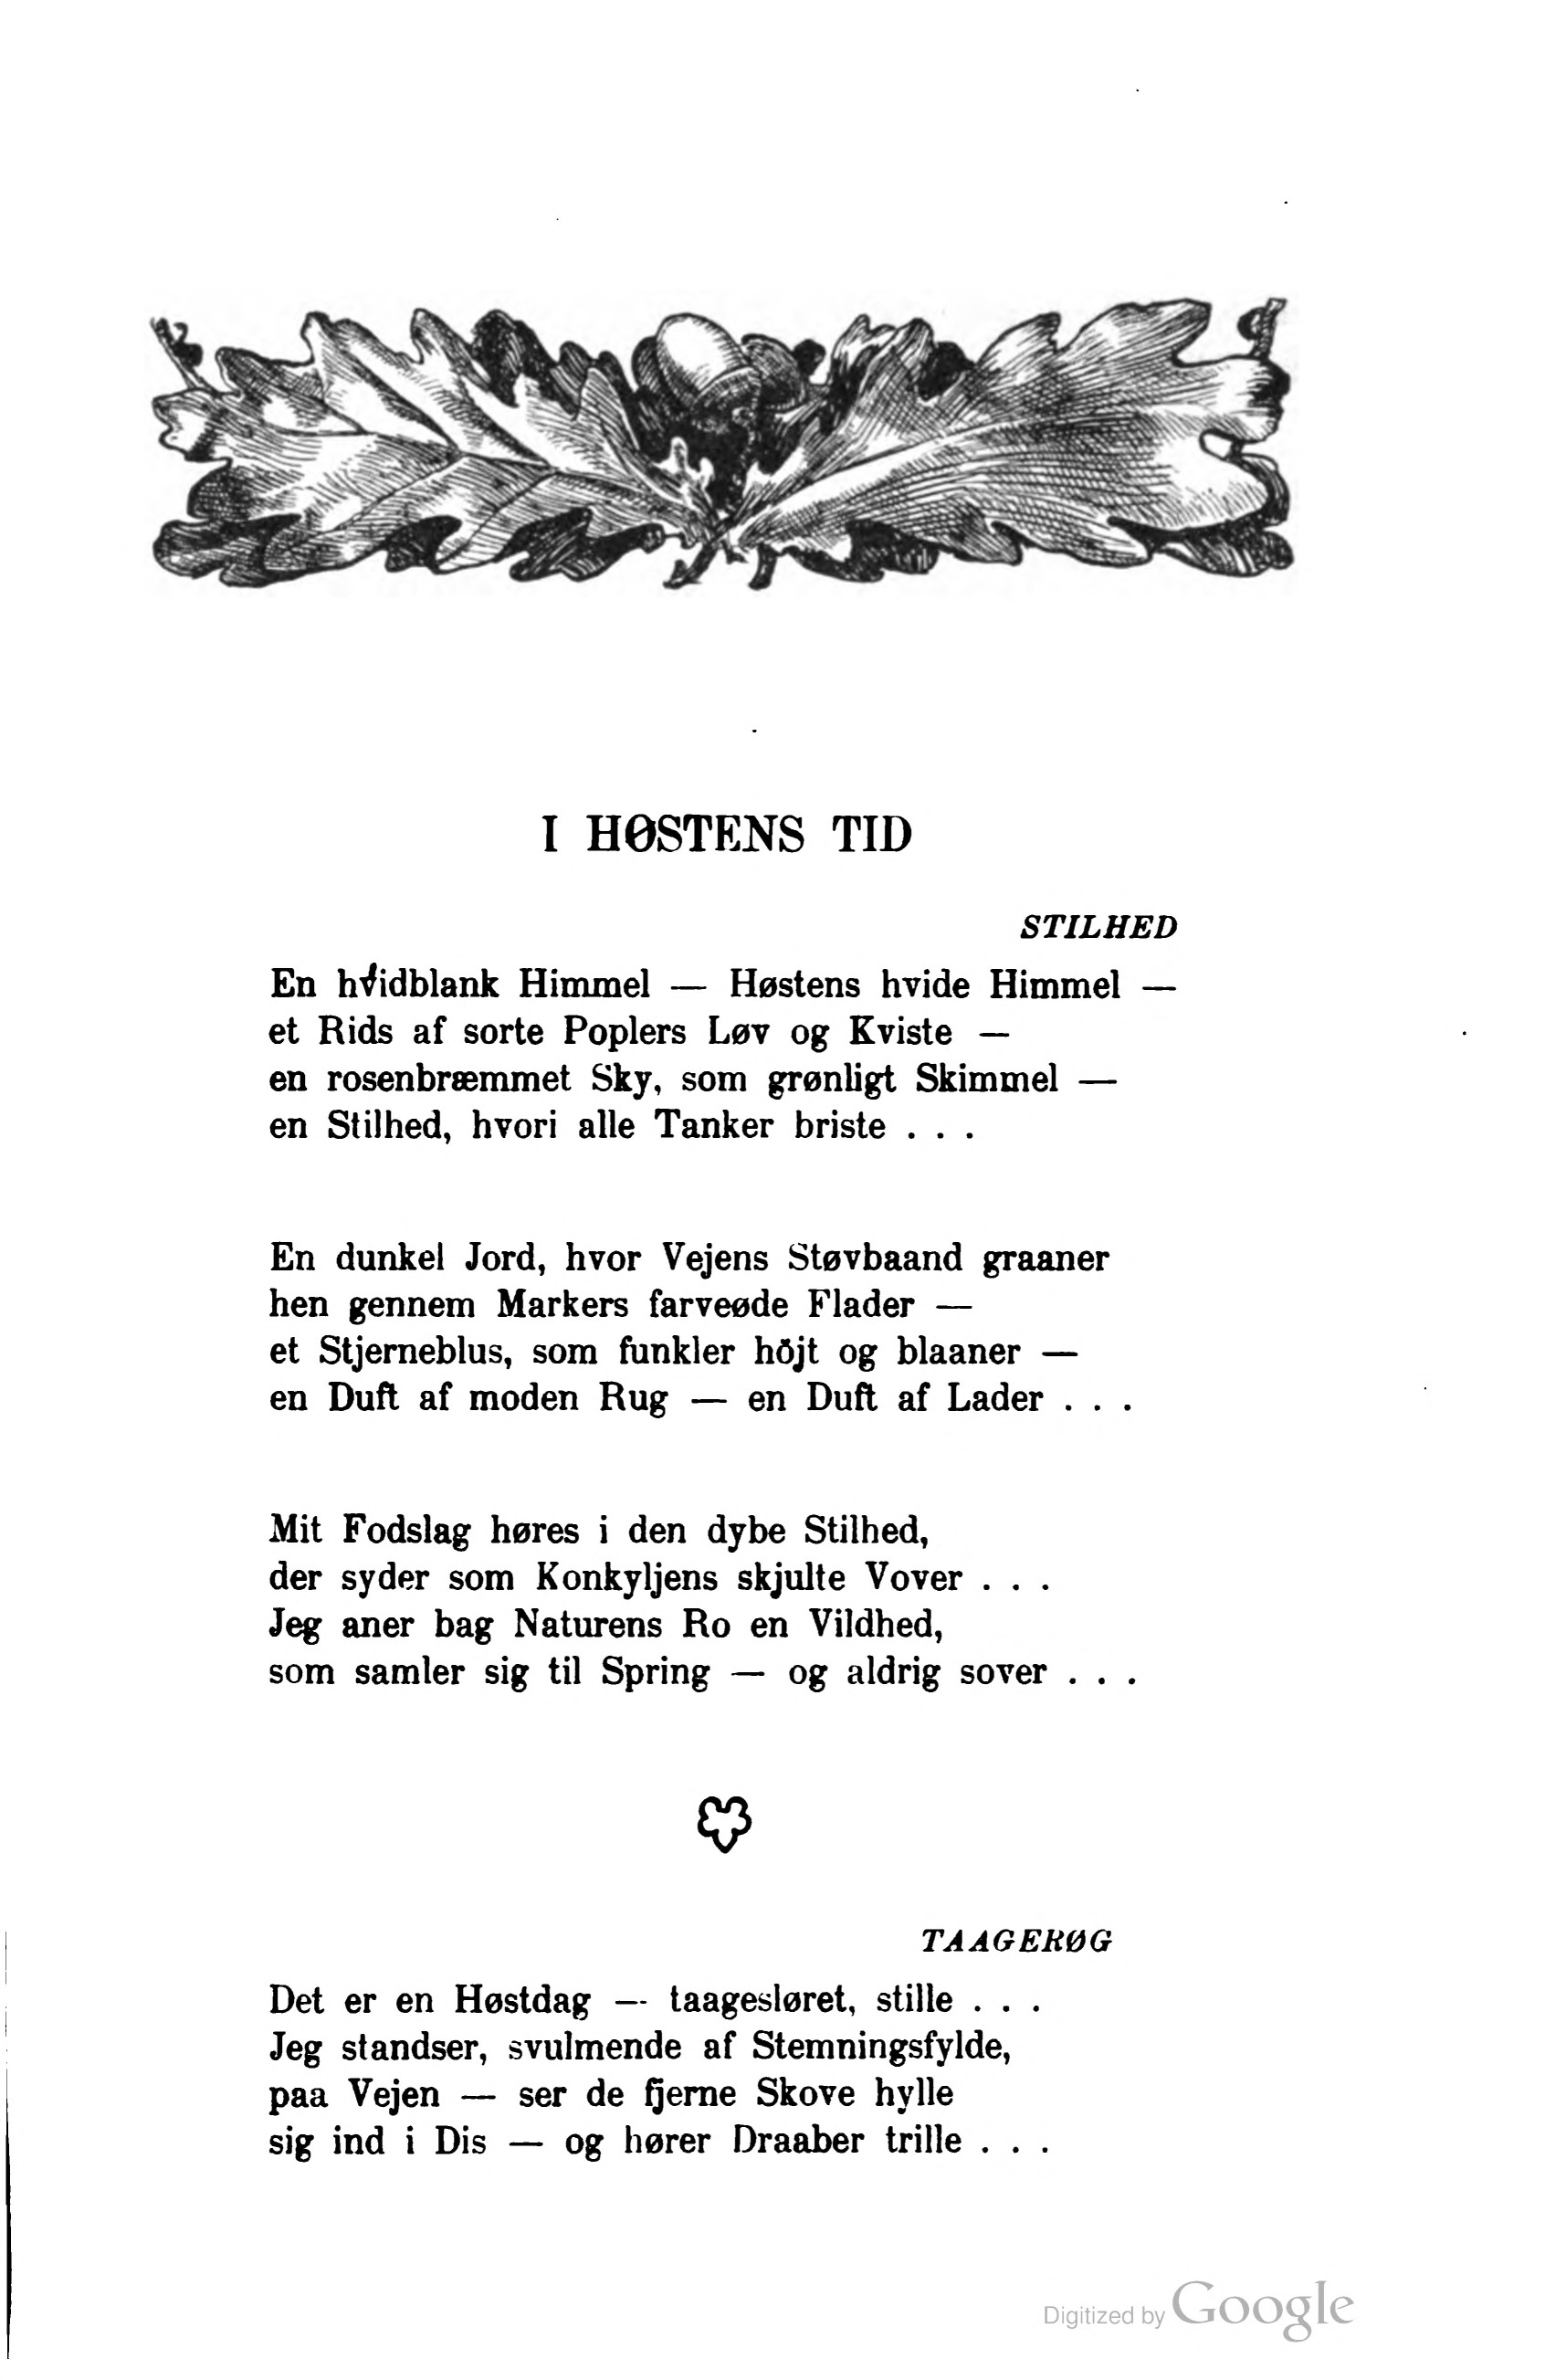 893 (Tilskueren / Aarg. 21 (1904))